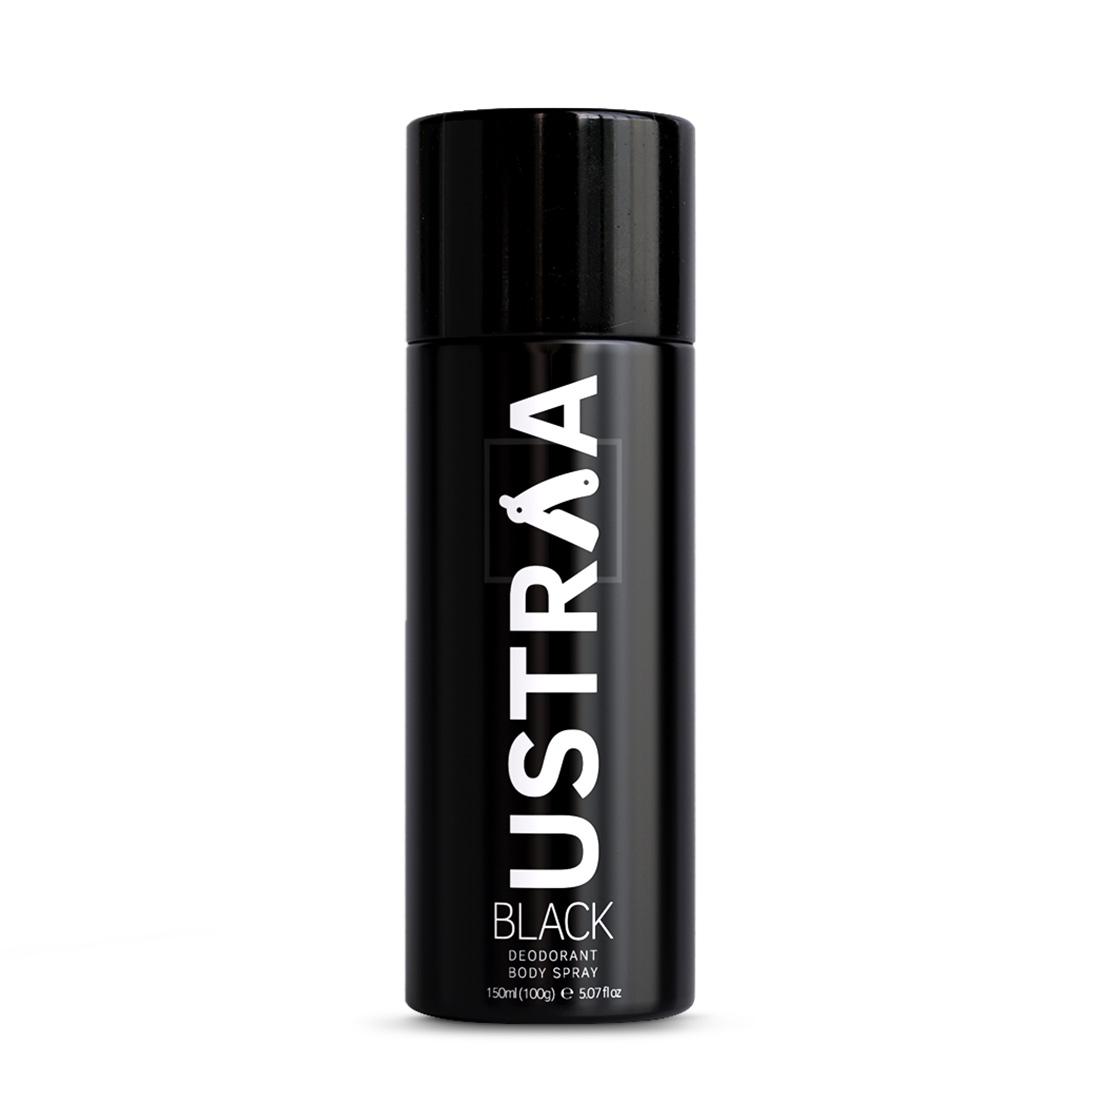 Ustraa Black Deodorant Body Spray | 24-Hour Freshness for Men